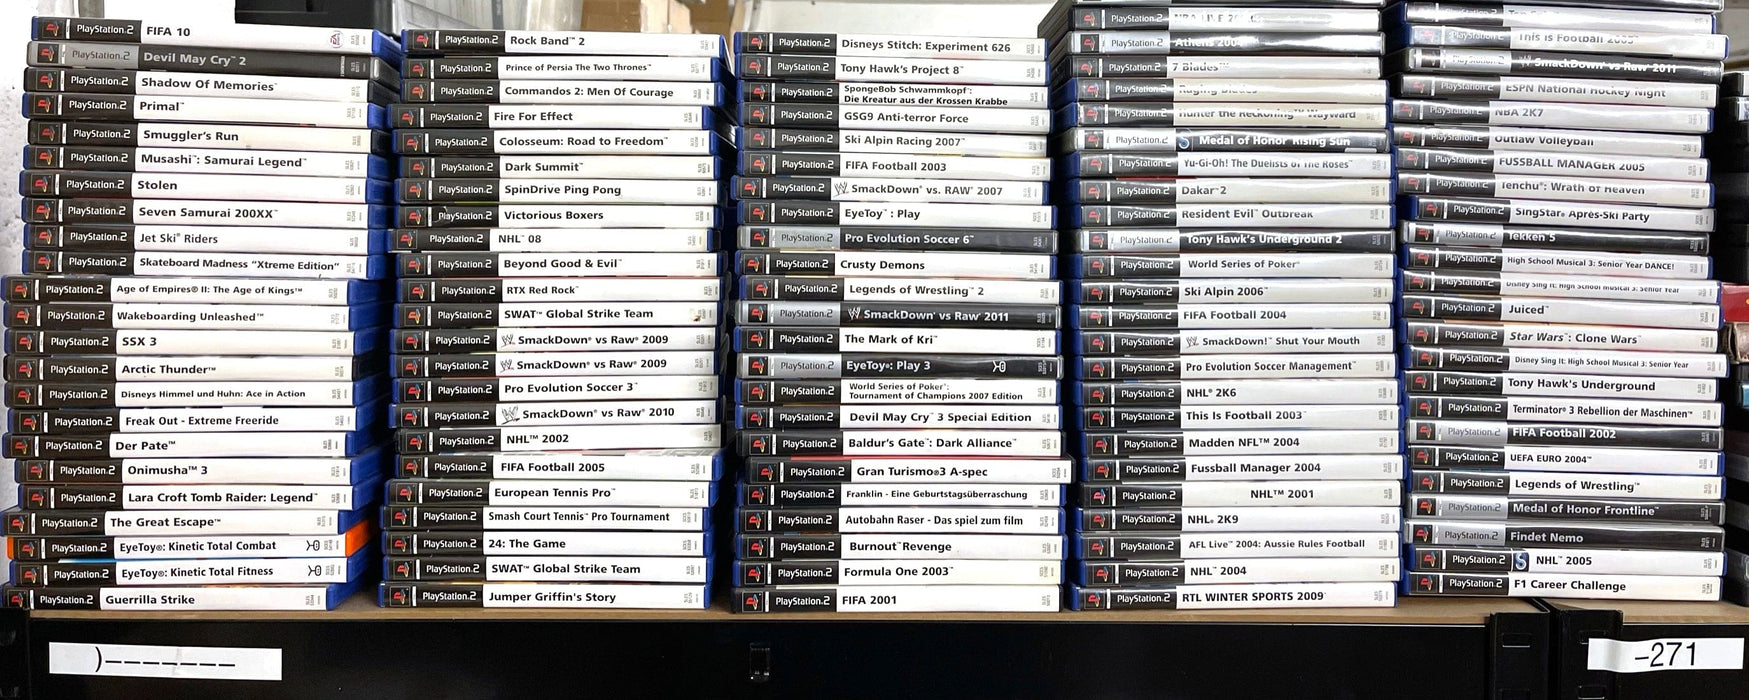 Glaciergames PlayStation 2 Game Mobile Light Force 2 PlayStation 2 (Nr.420)